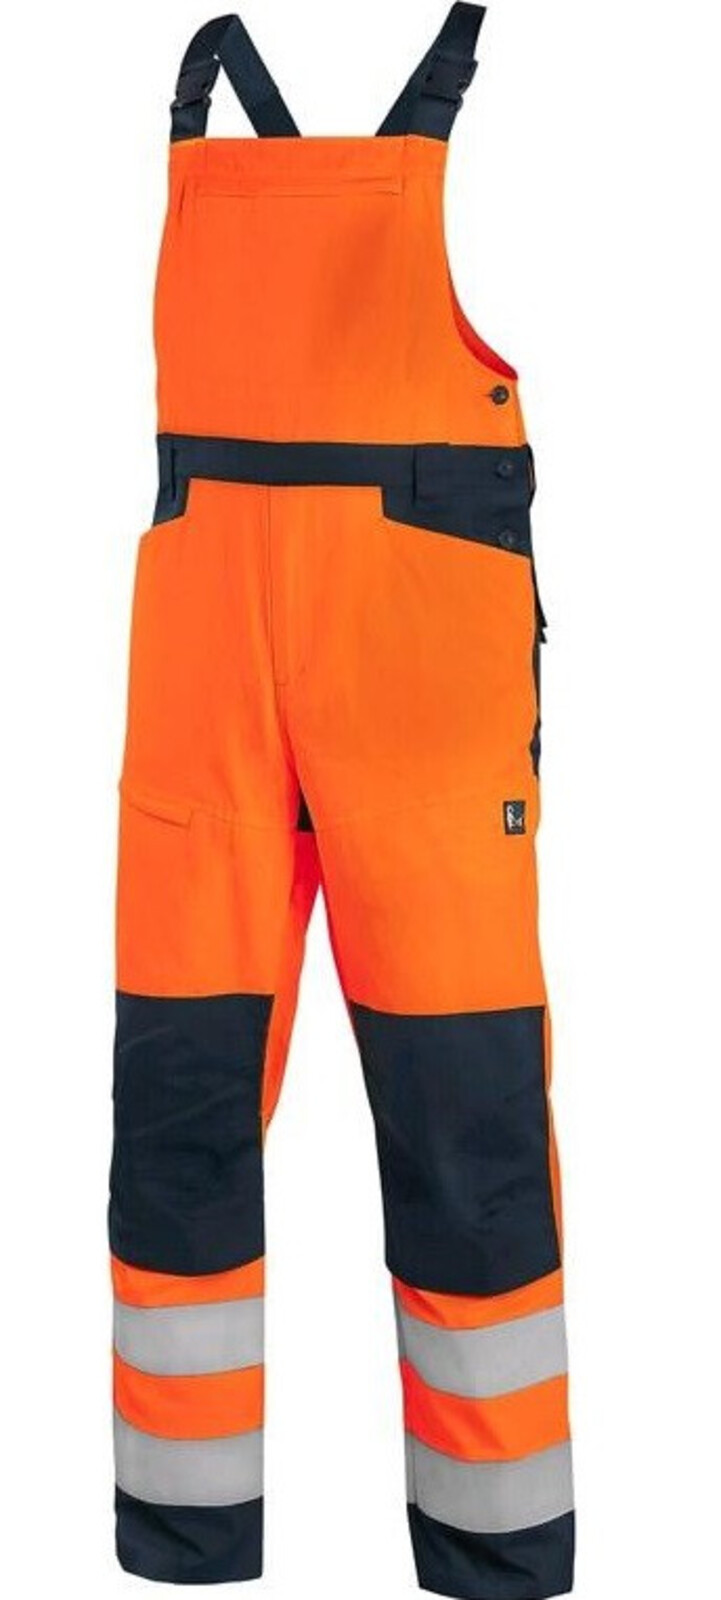 Pánske letné reflexné nohavice na traky CXS Halifax - veľkosť: 64, farba: oranžová/navy